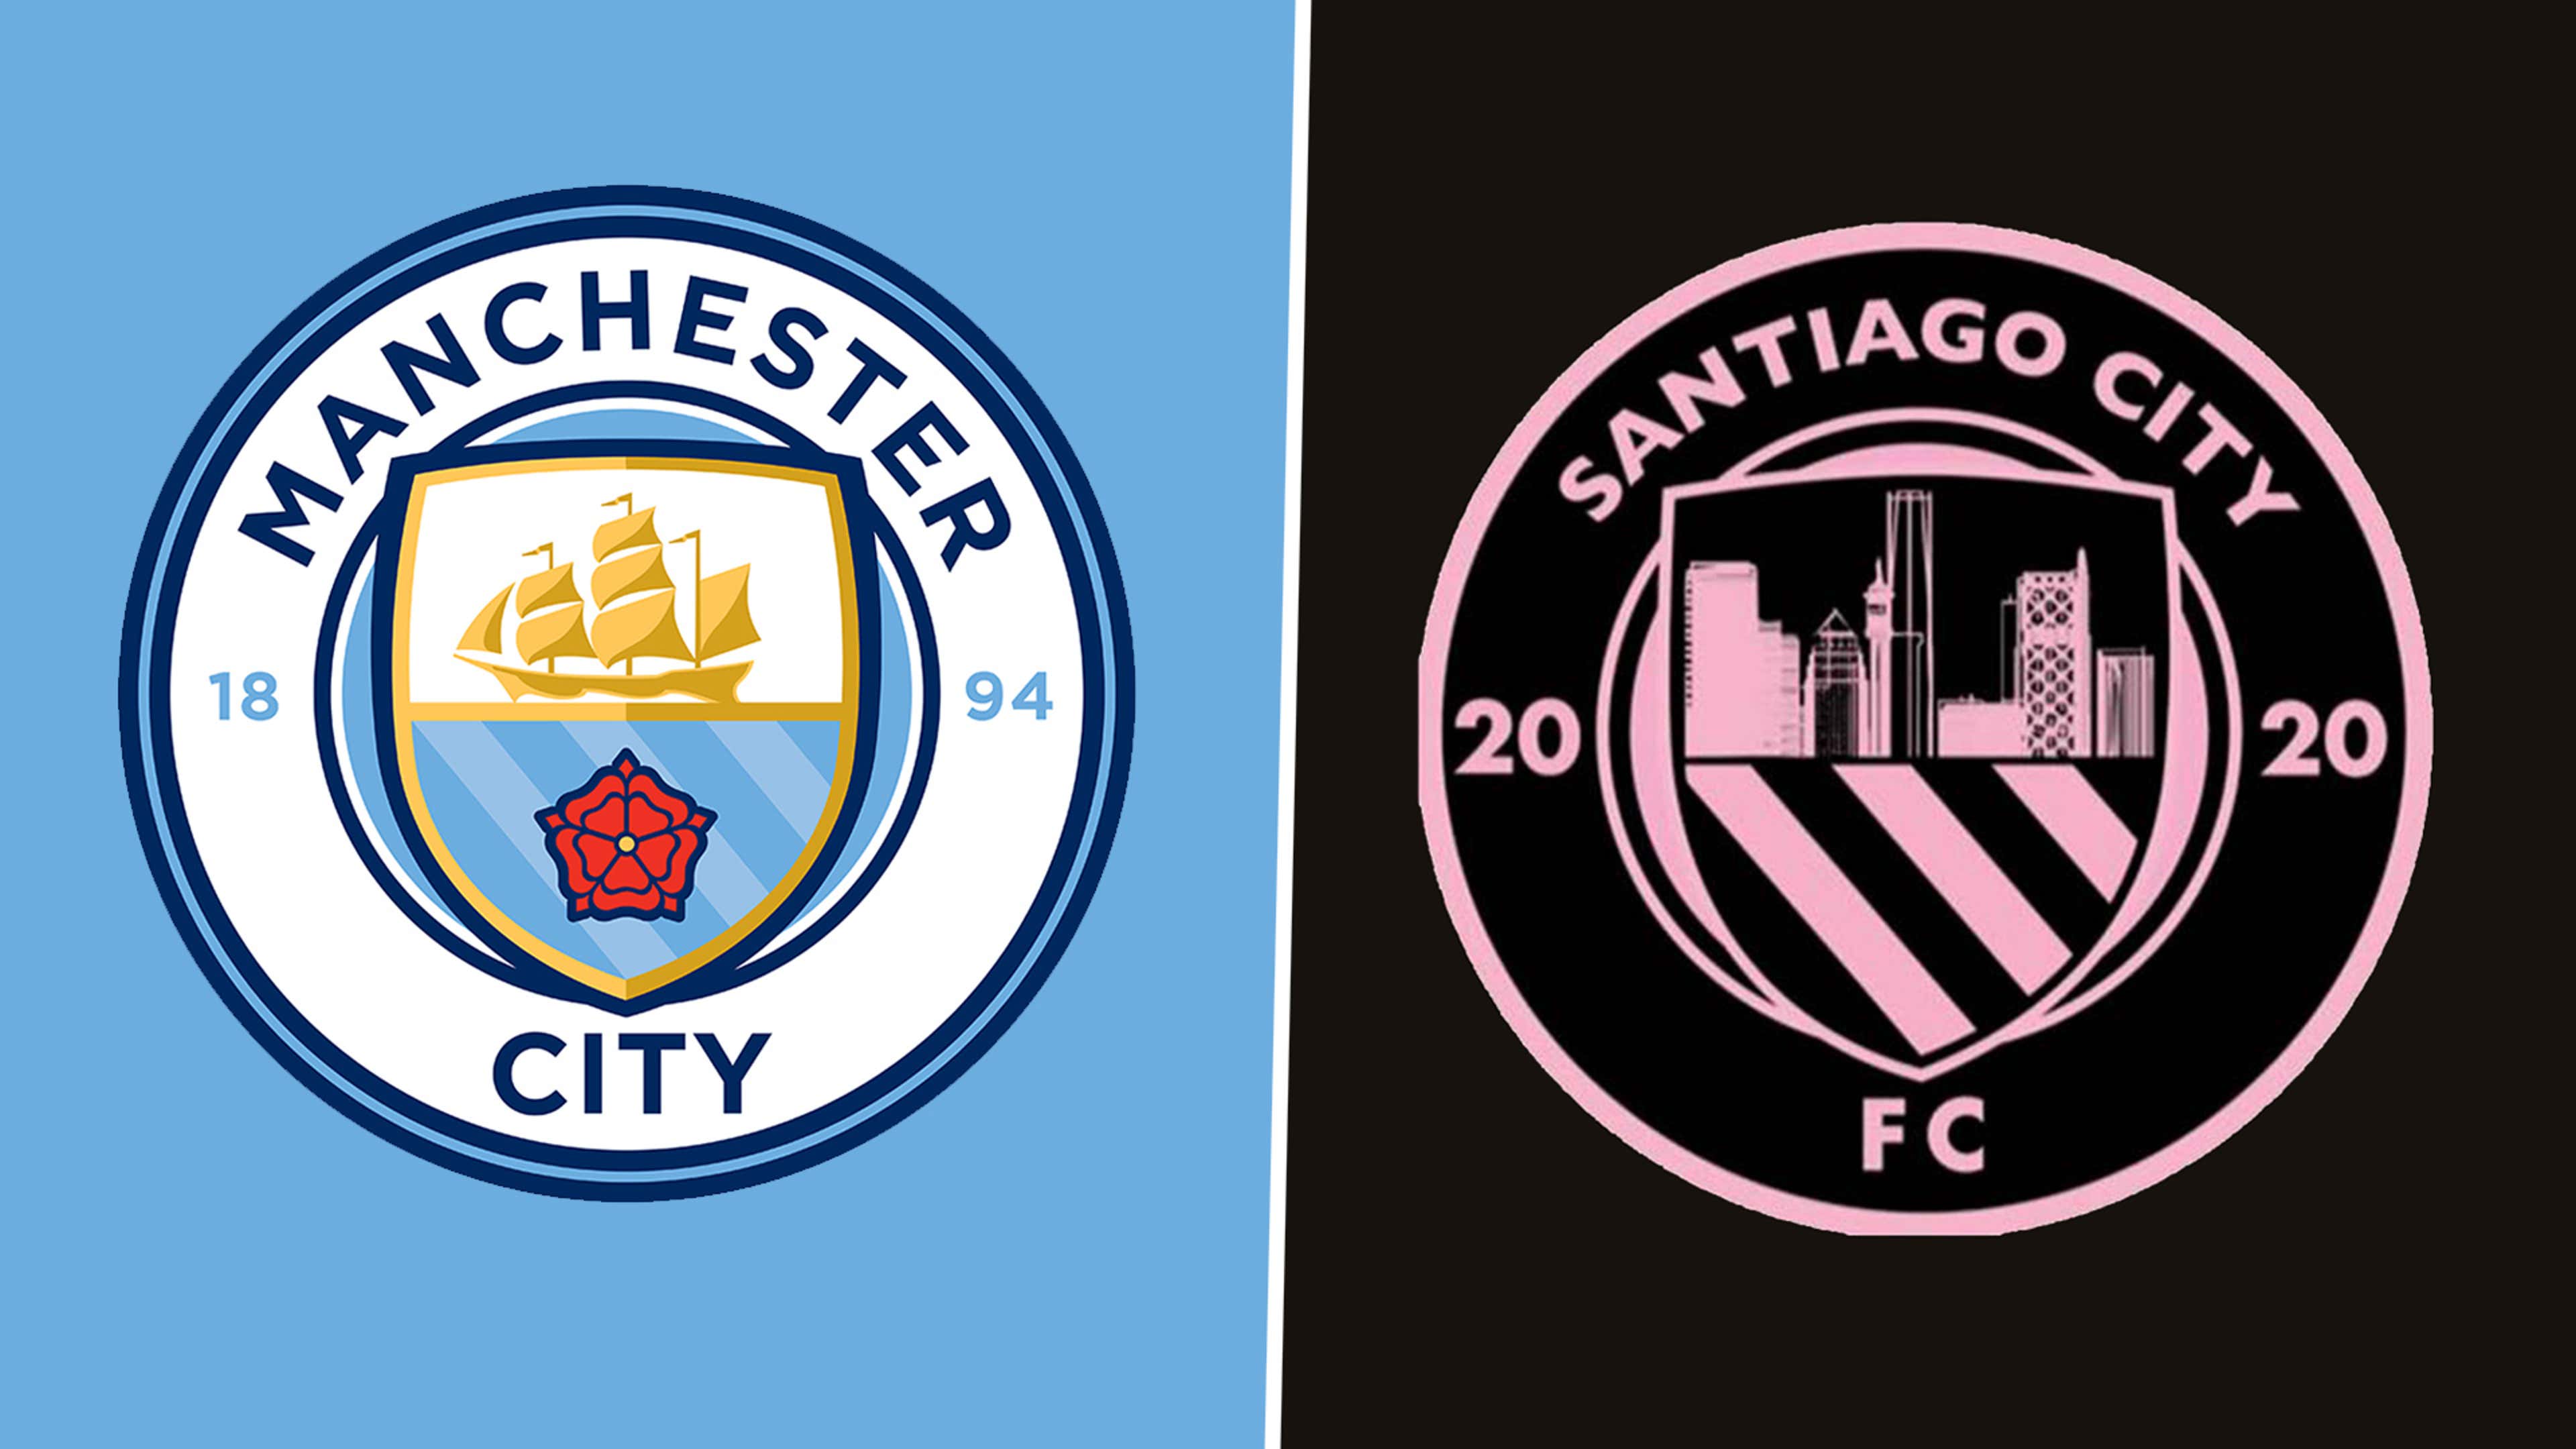 Have Santiago City FC copied Man City\'s club crest? Premier League ...